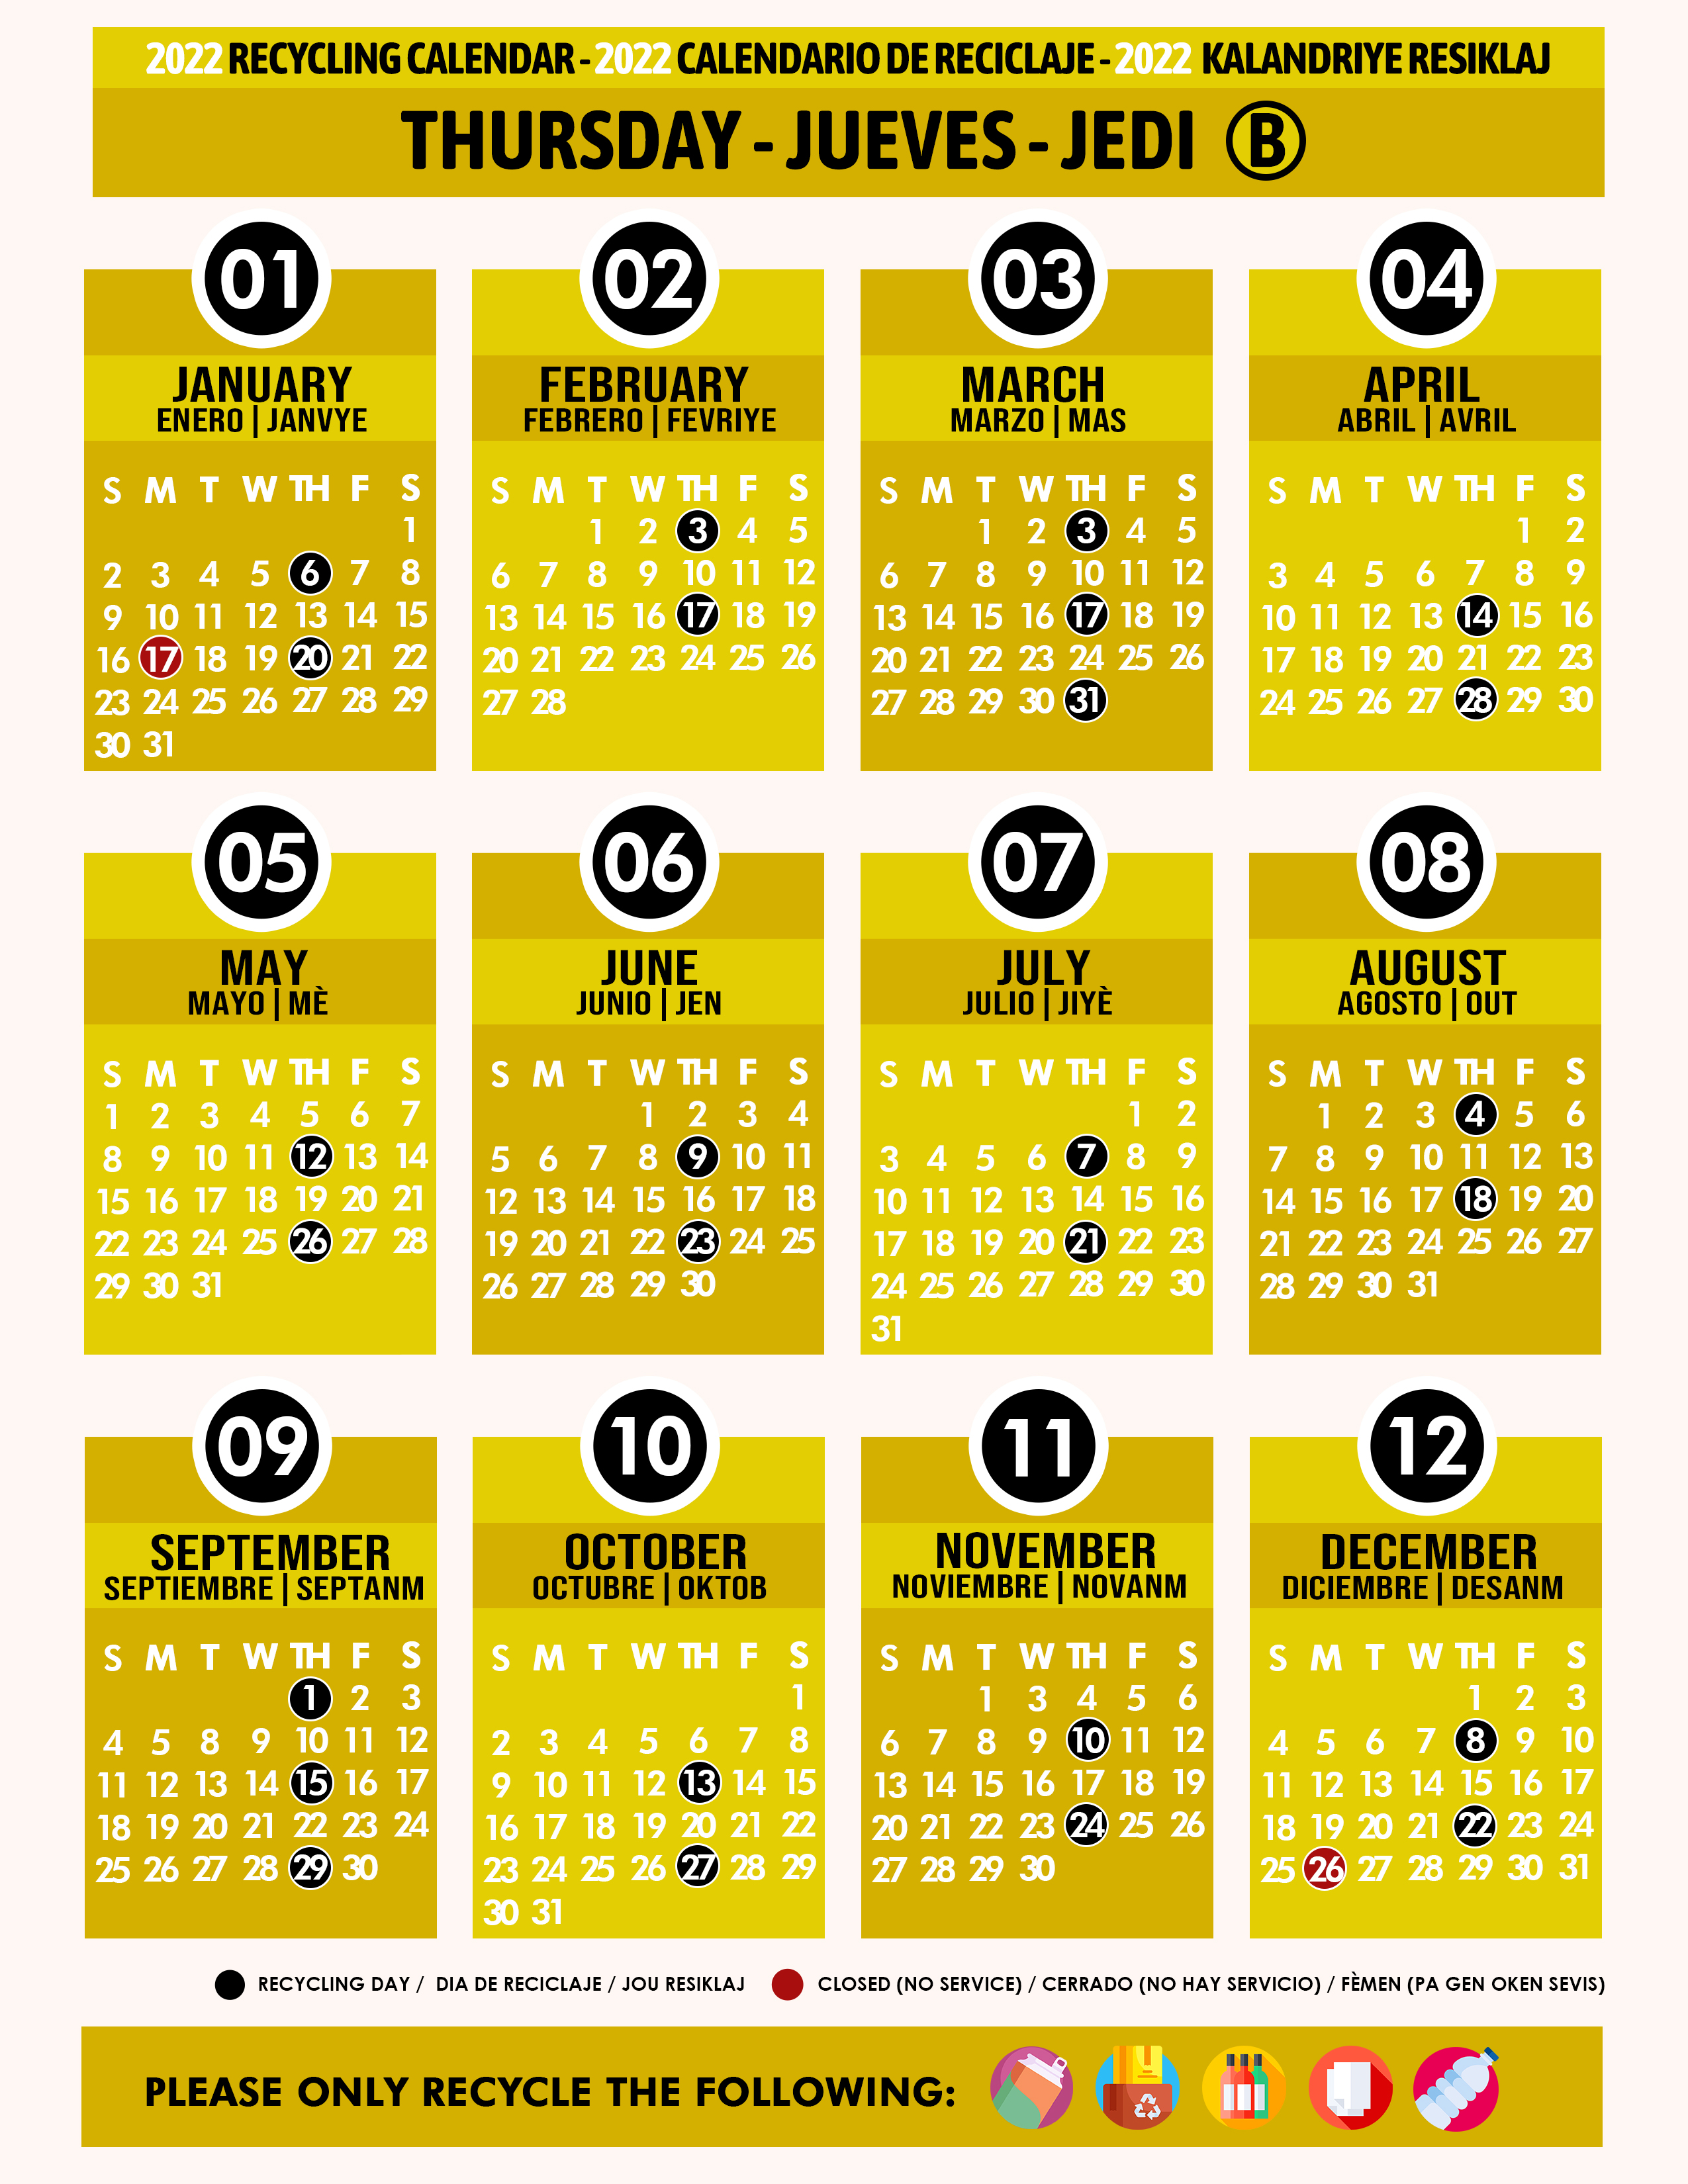 Miami Dade Recycling Schedule 2022 Recycling Calendar 2022 Thursday B Yellow - Miami